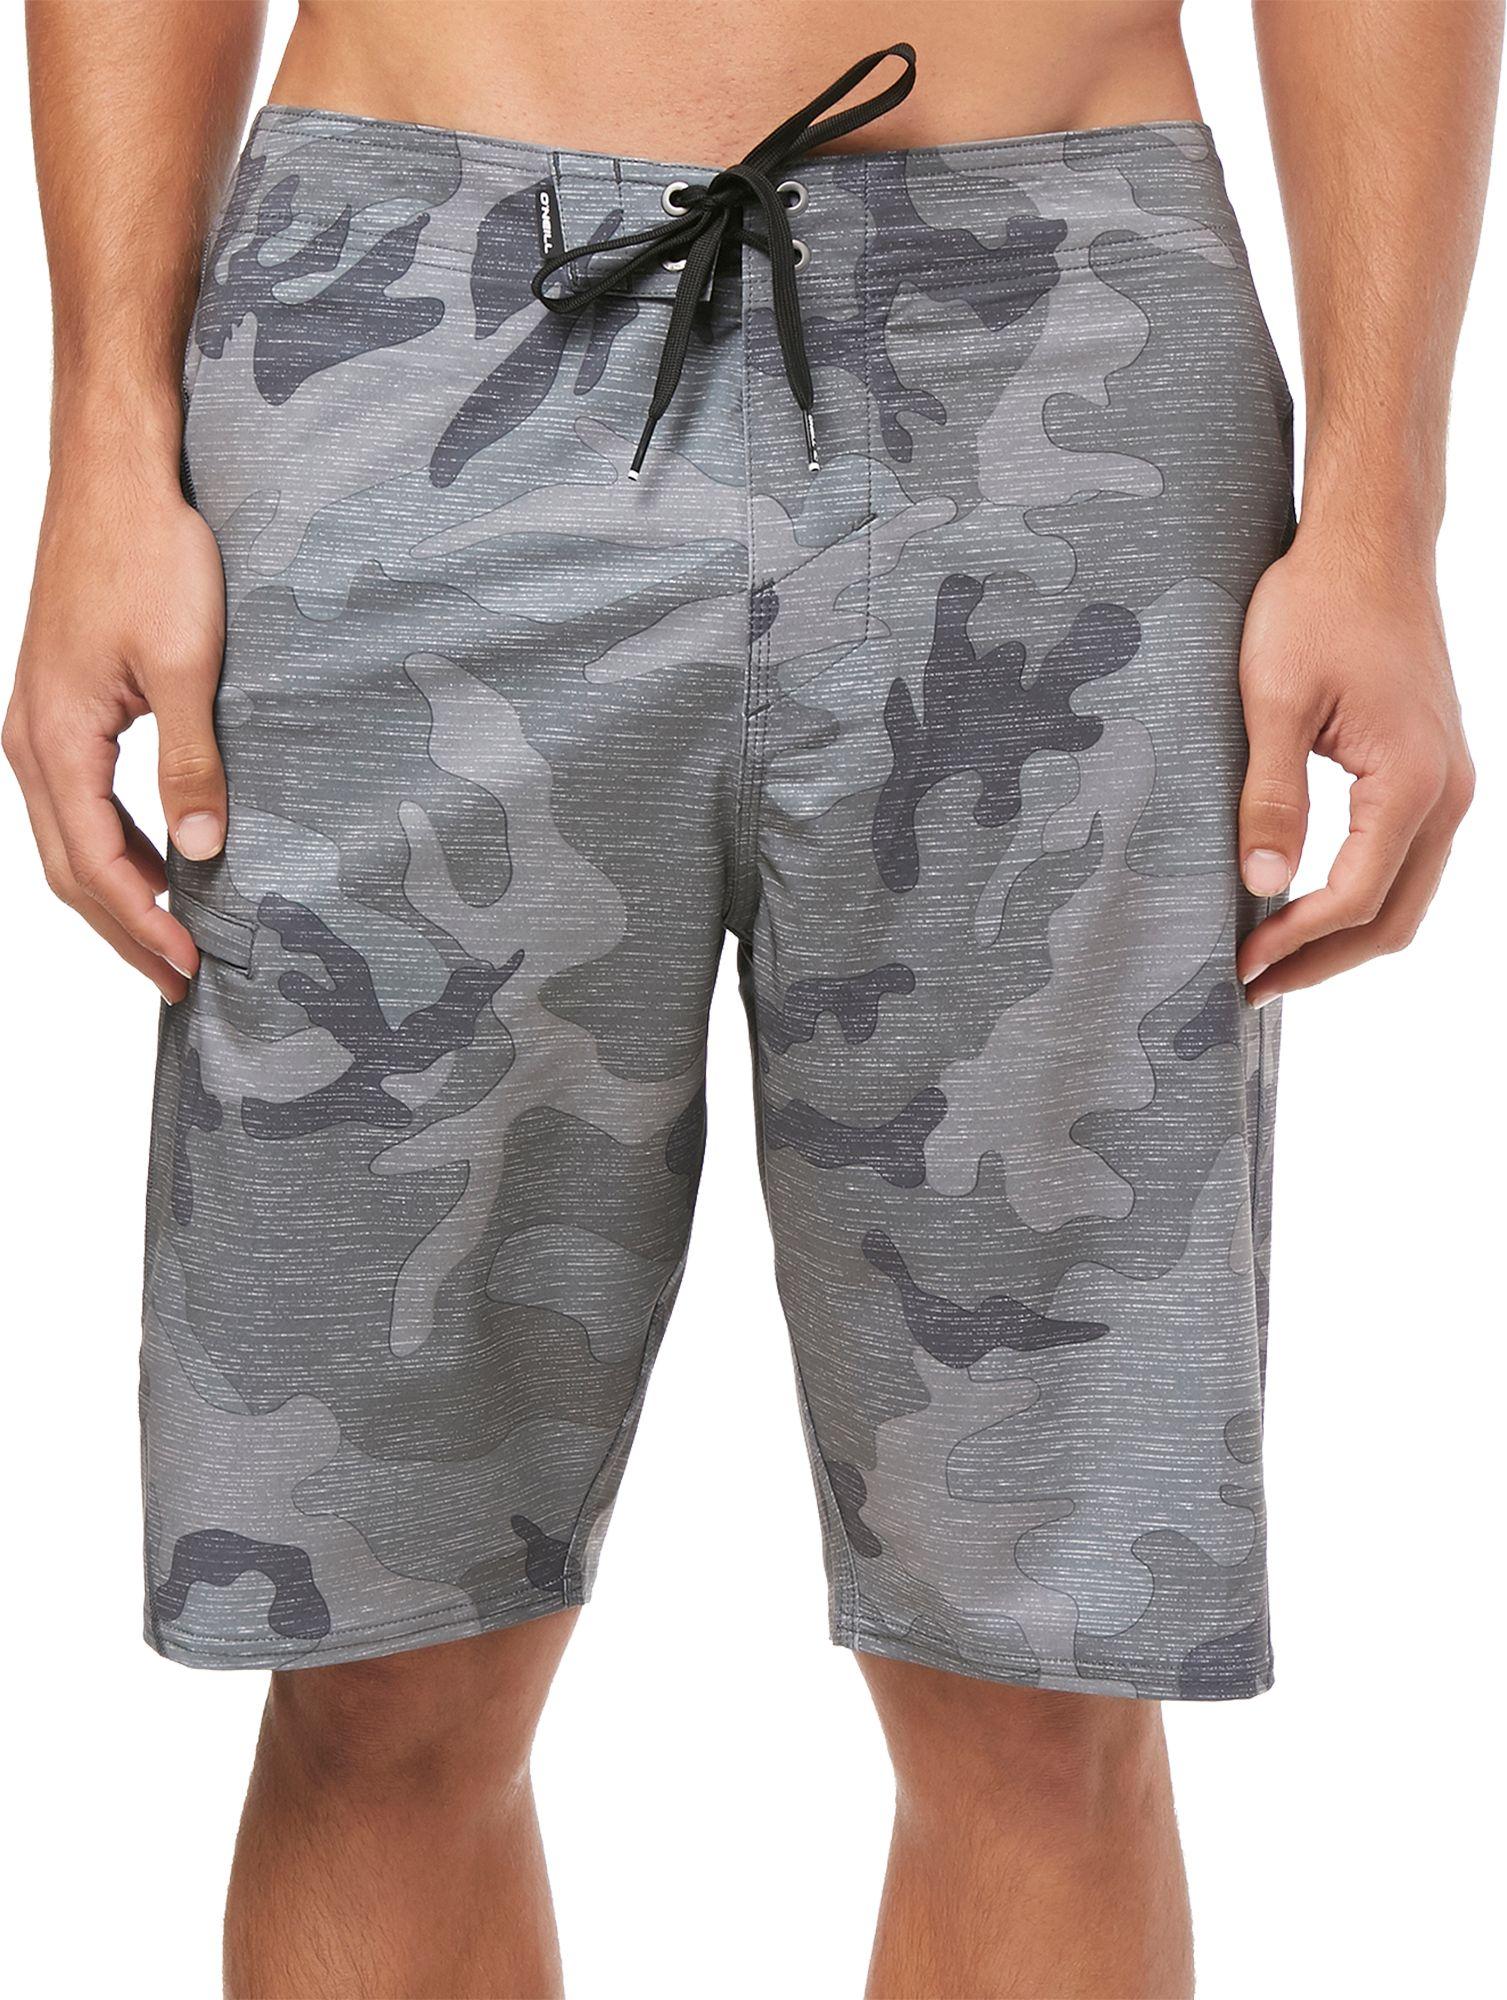 O'neill Sportswear Hyperfreak S Seam Board Shorts in Gray for Men - Lyst